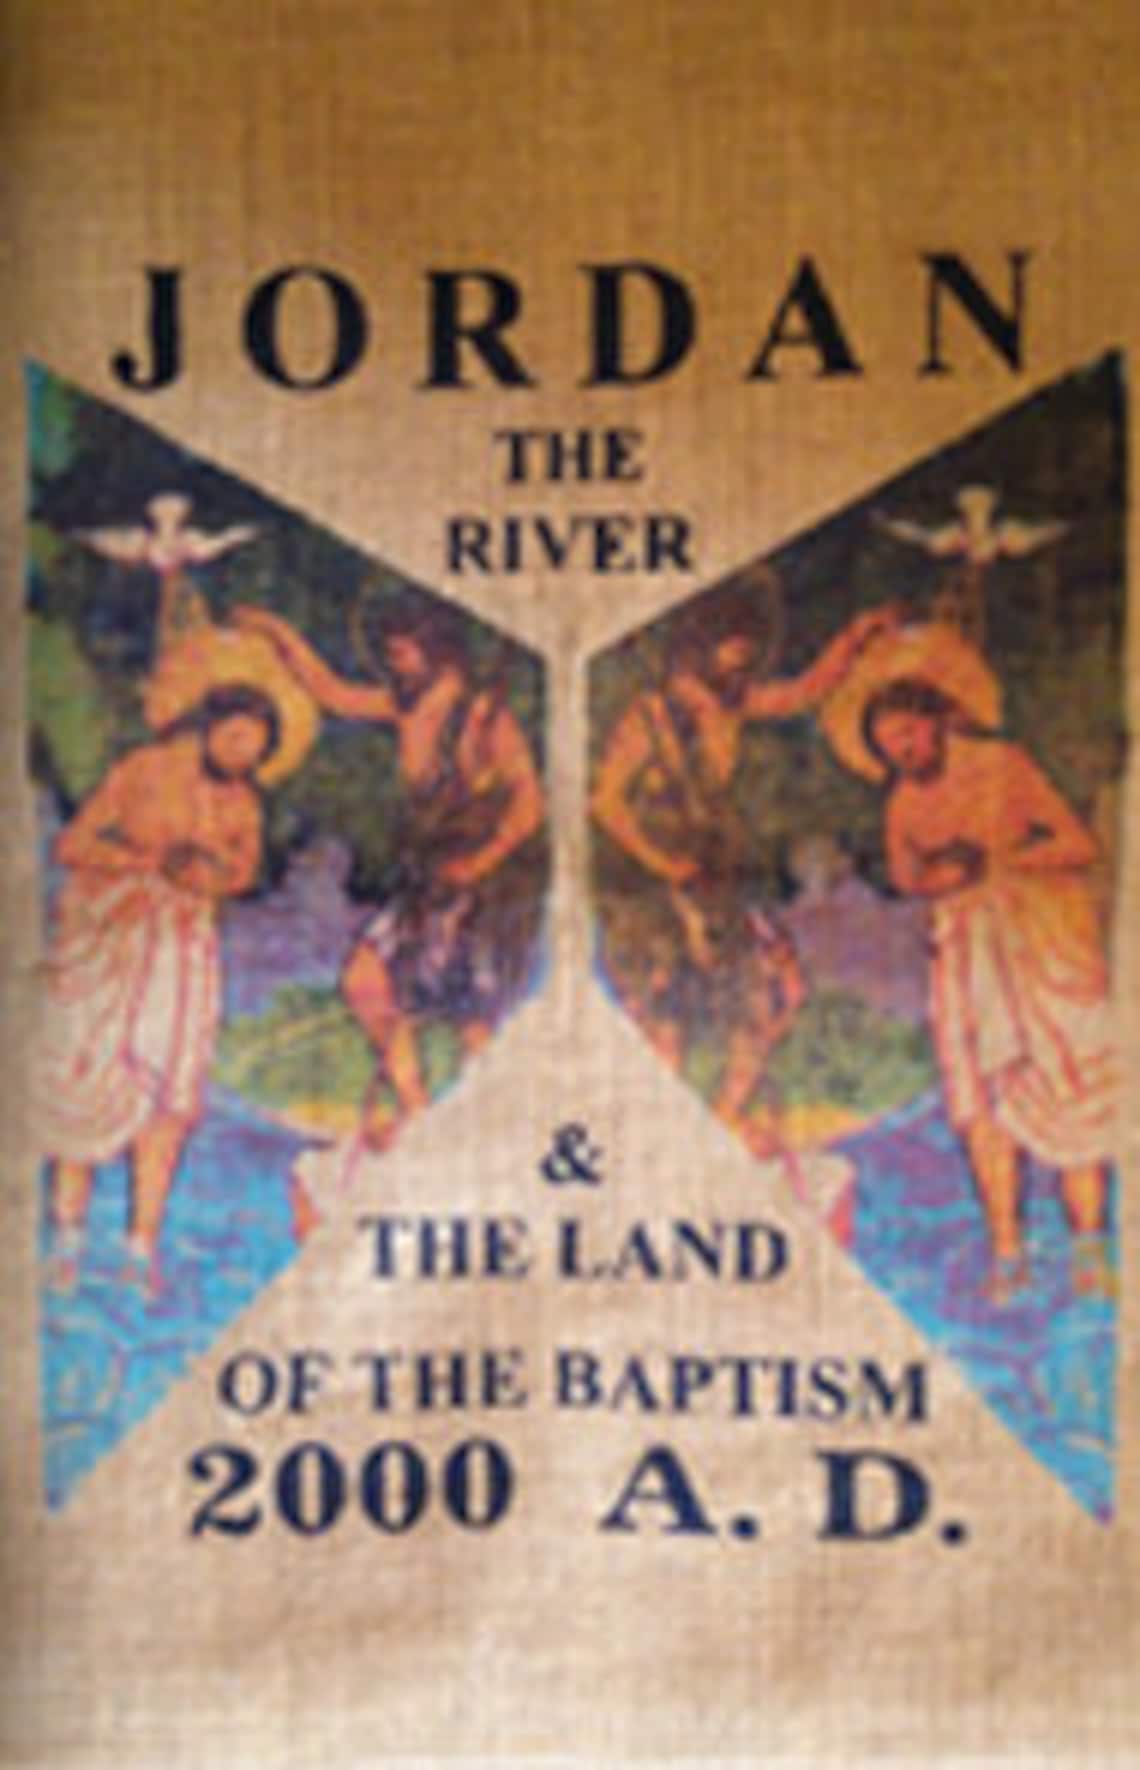 Cúrate con agua bendita del río Jordán, donde Jesucristo fue bautizado y bendecido. Una botella en forma de cruz, regalo de Tierra Santa.